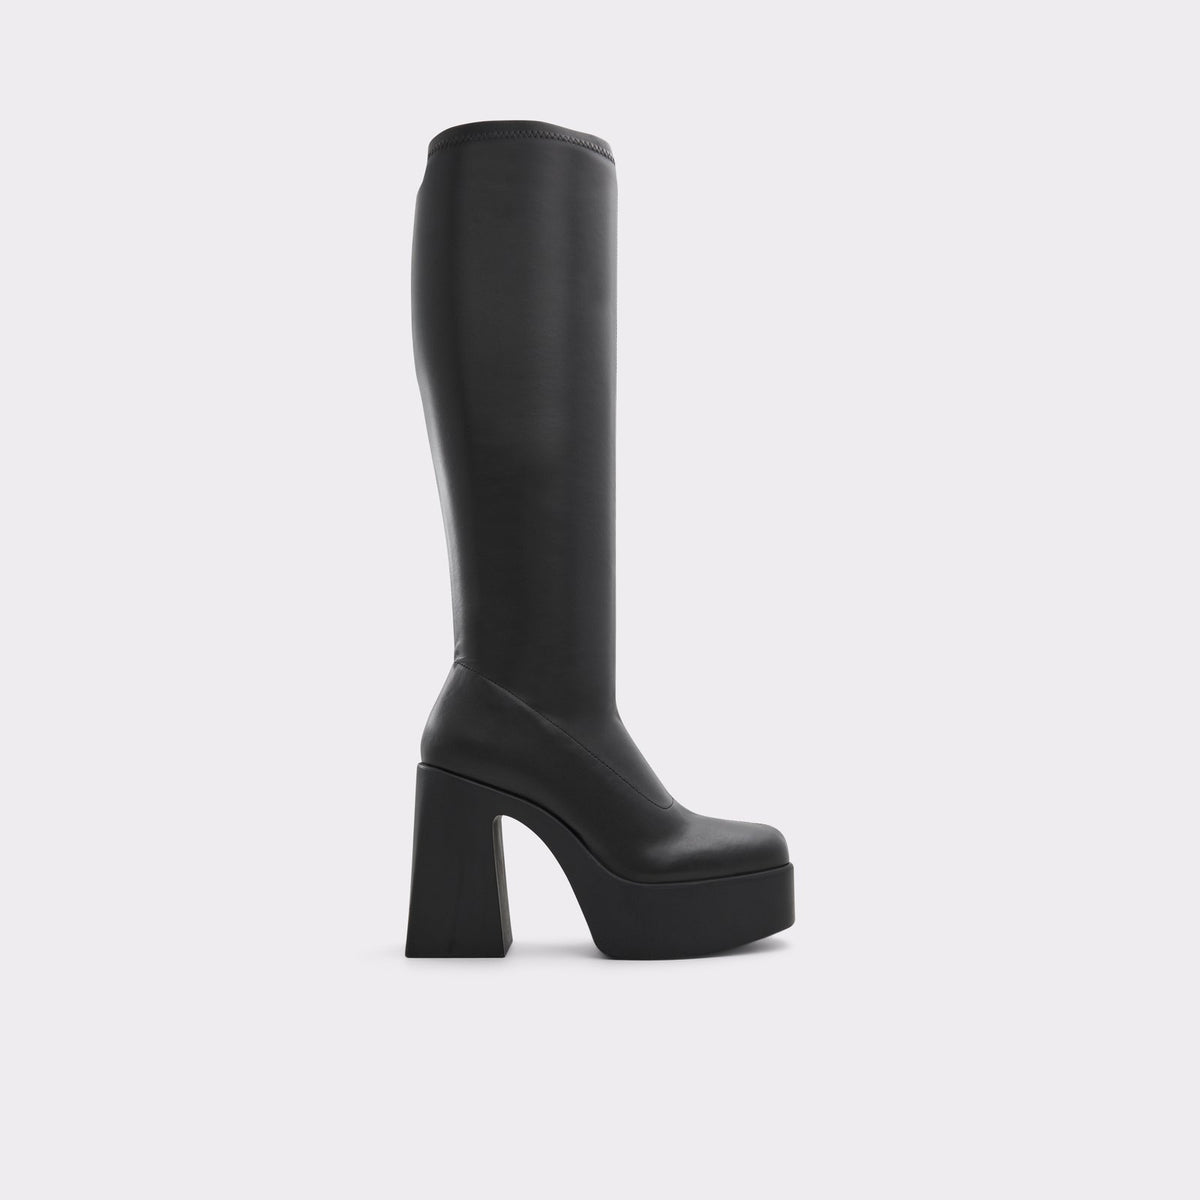 Blive kold Ham selv Broderskab Aldo Women's Knee-High Boots Moulin (Black) – ALDO Shoes UK